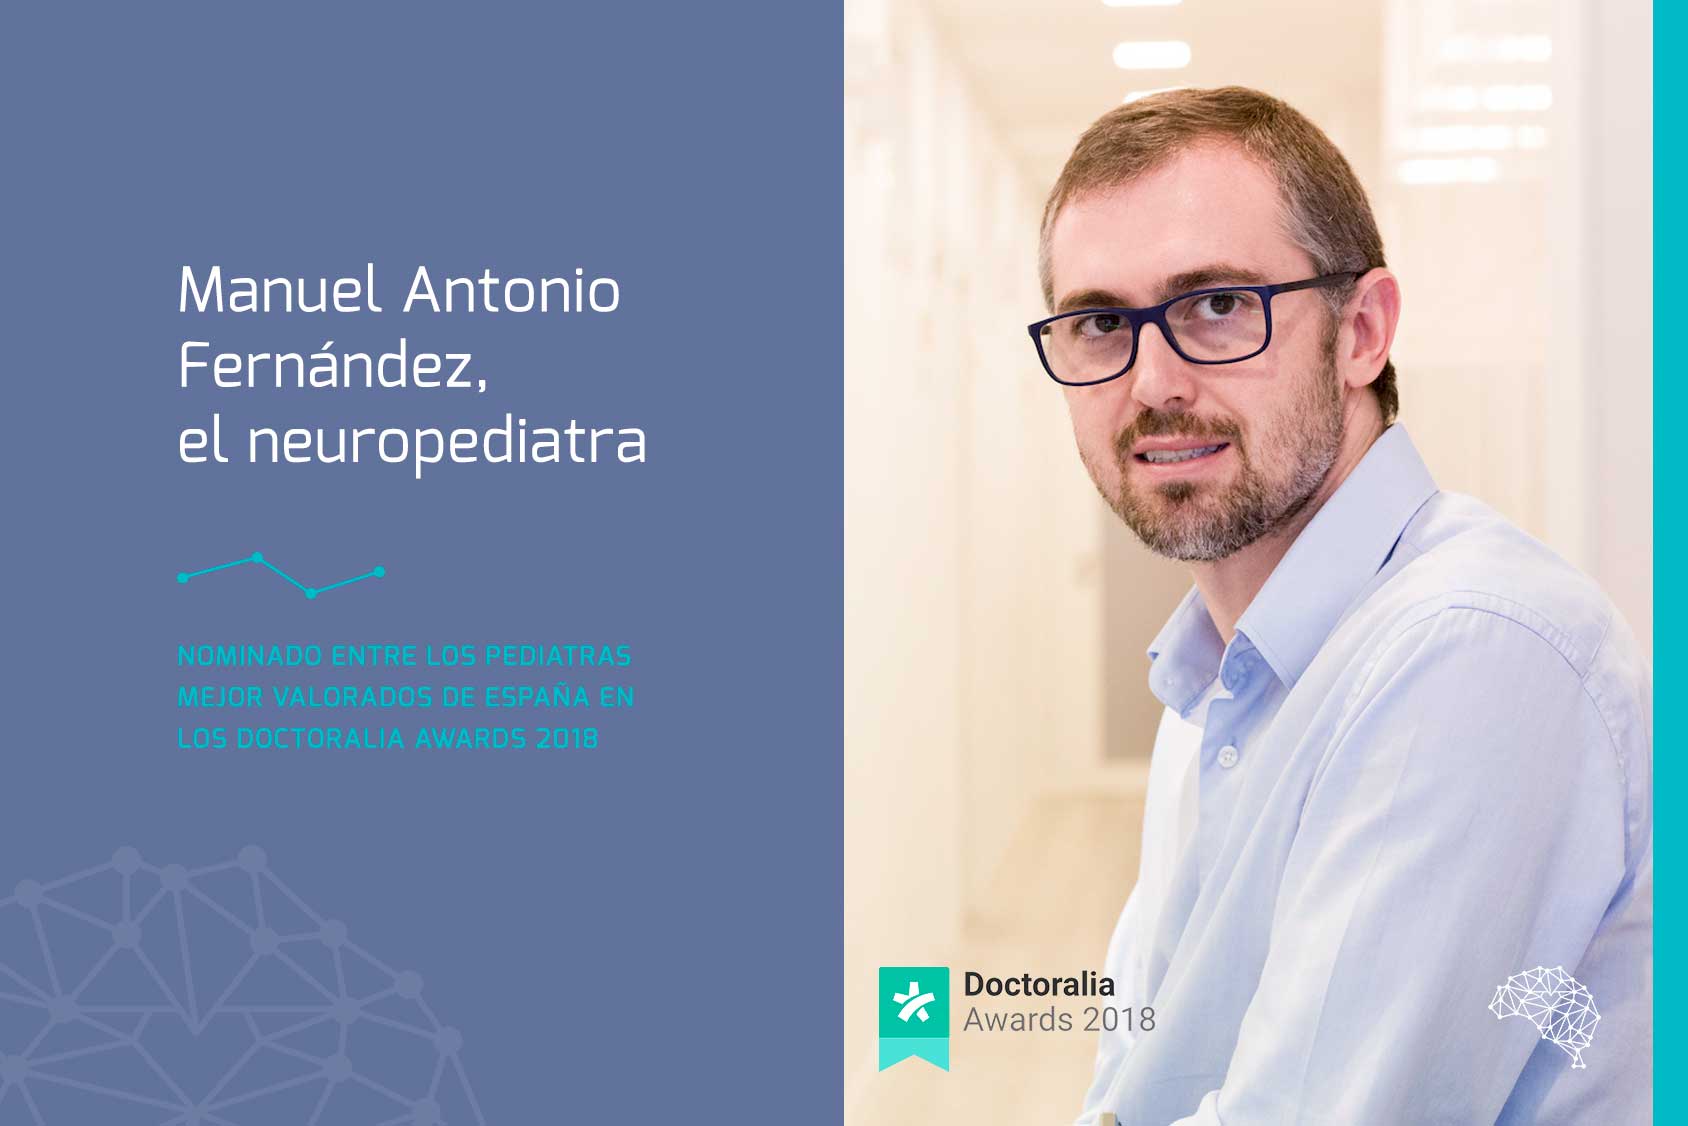 El Instituto Andaluz de Neurología pediátrica organiza un congreso online gratuito